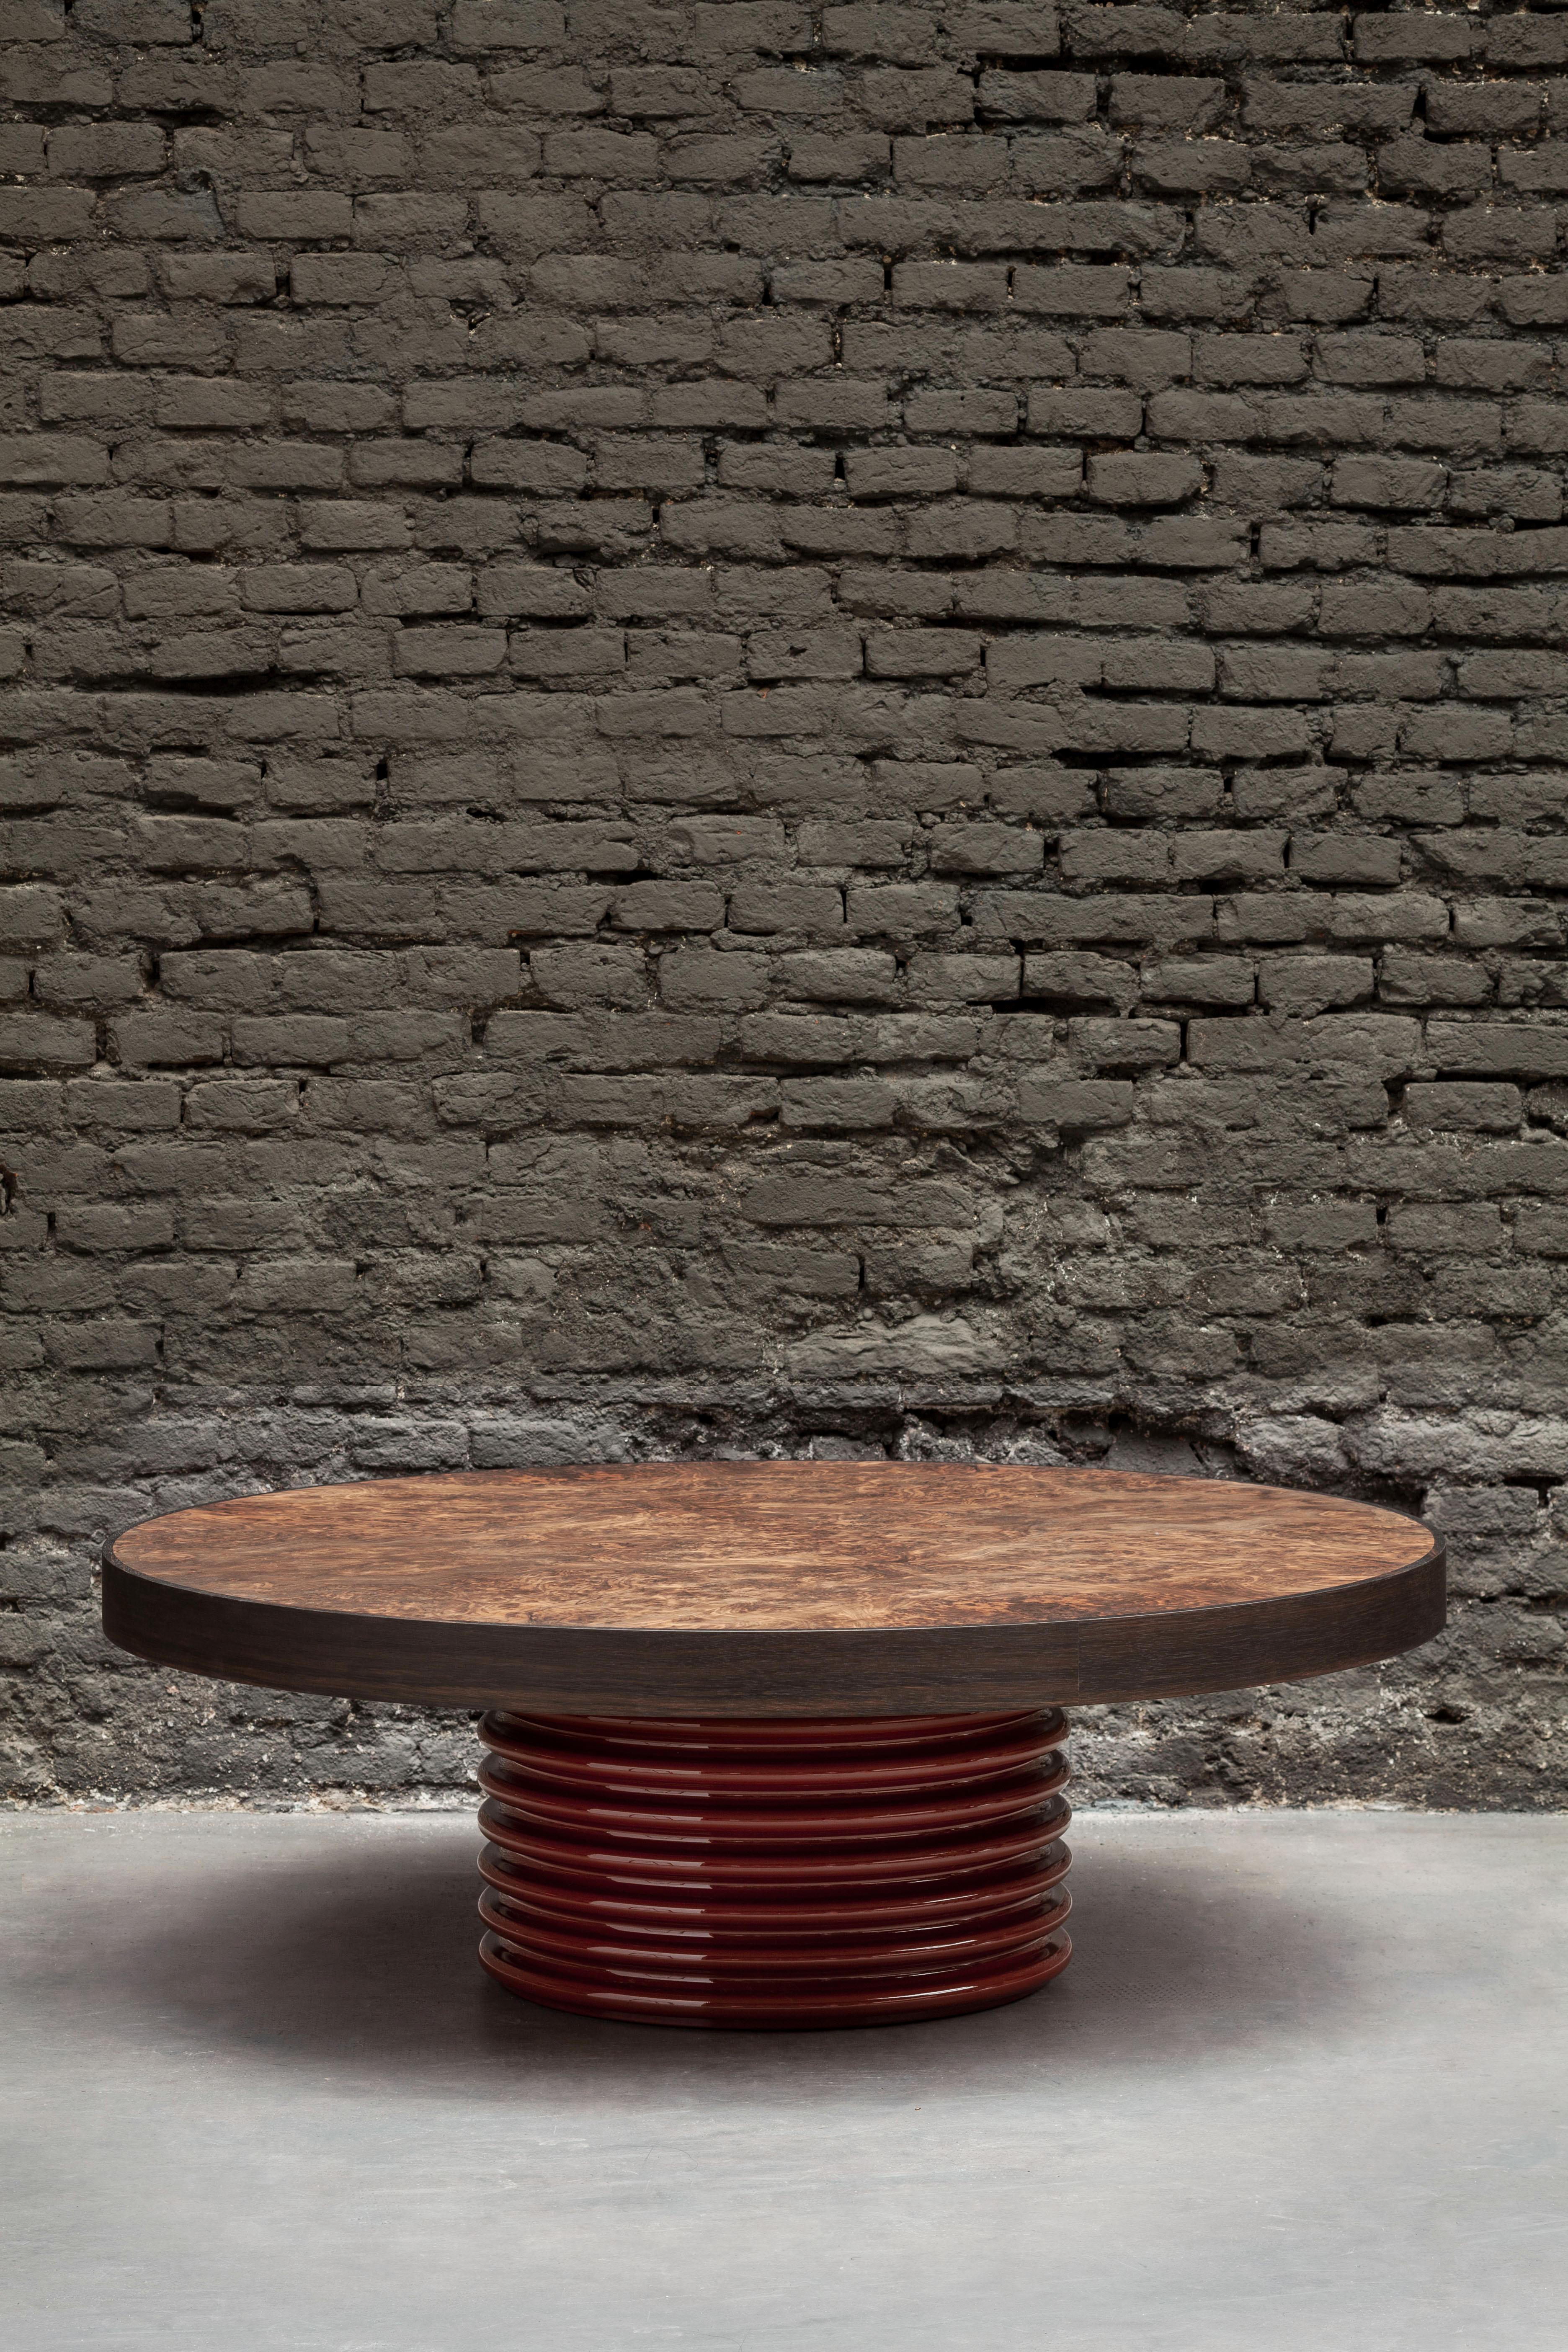 Die QD03-Tische sind Teil einer Serie. Sie können einzeln oder in einer Gruppe mit den verschiedenen Modellen der Serie aufgestellt werden. Sowohl die Tischplatte als auch der Sockel können in Farbe und Material individuell gestaltet werden. Jede